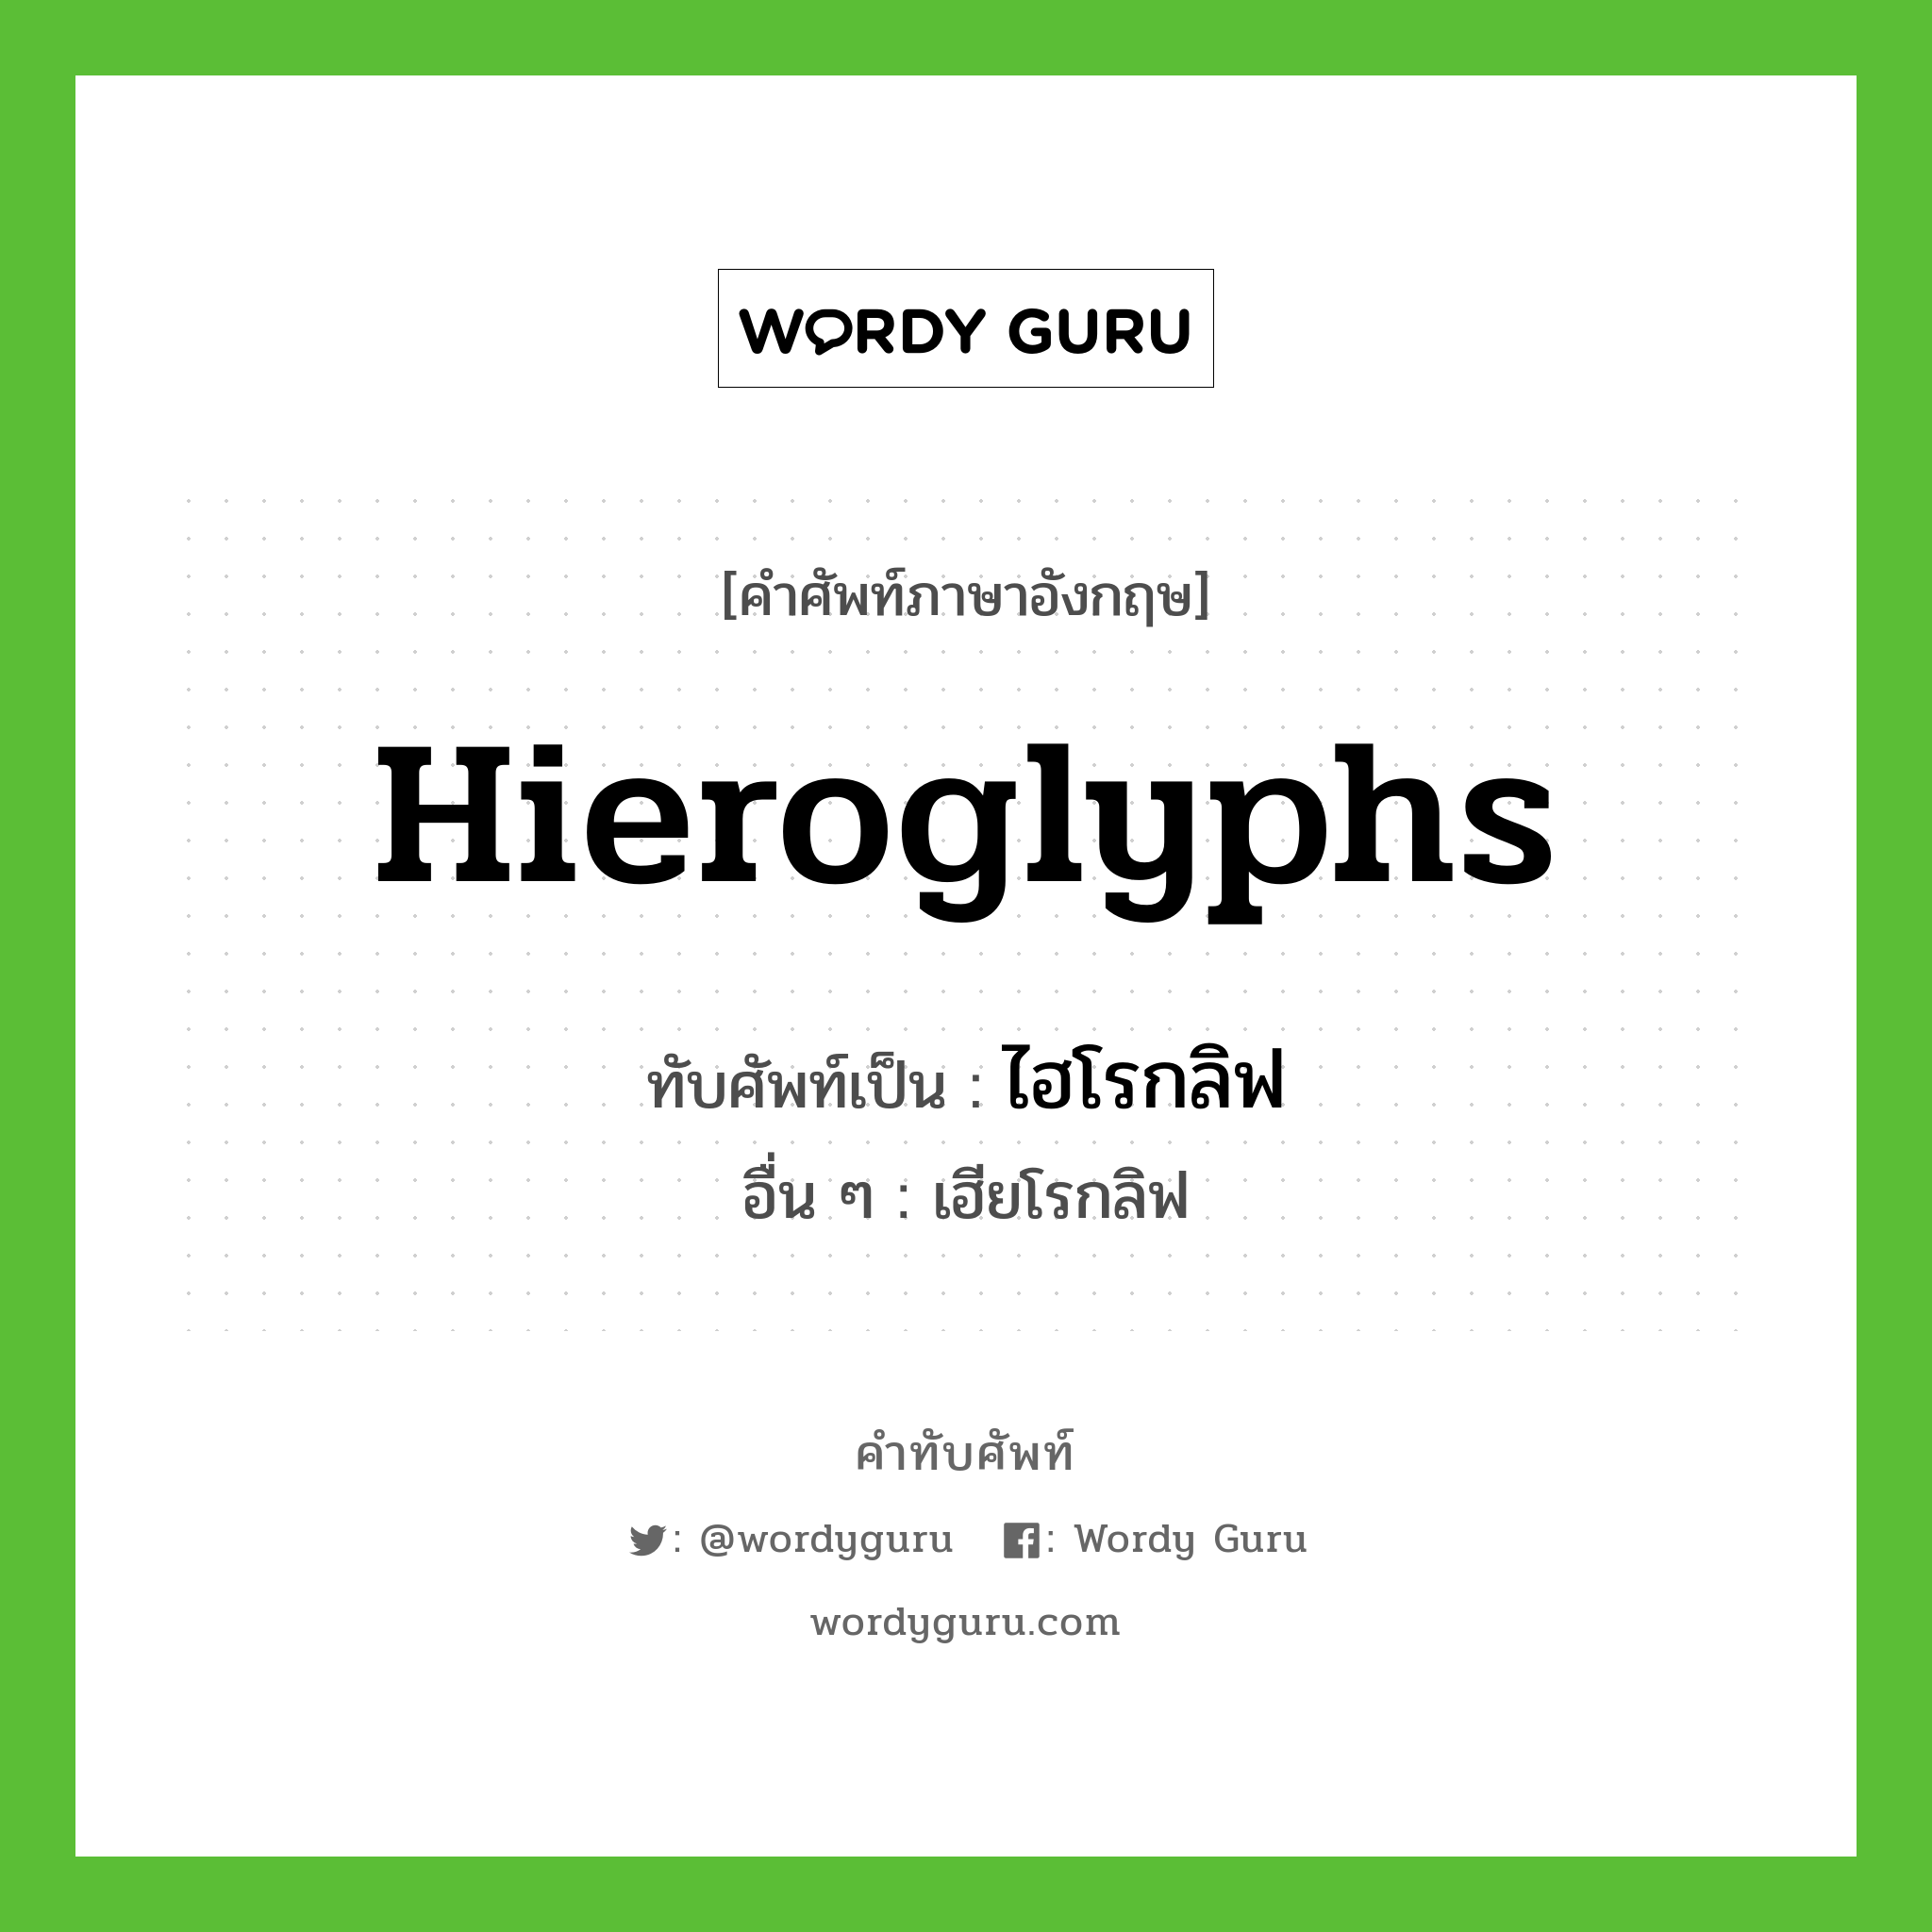 Hieroglyphs เขียนเป็นคำไทยว่าอะไร?, คำศัพท์ภาษาอังกฤษ Hieroglyphs ทับศัพท์เป็น ไฮโรกลิฟ อื่น ๆ เฮียโรกลิฟ